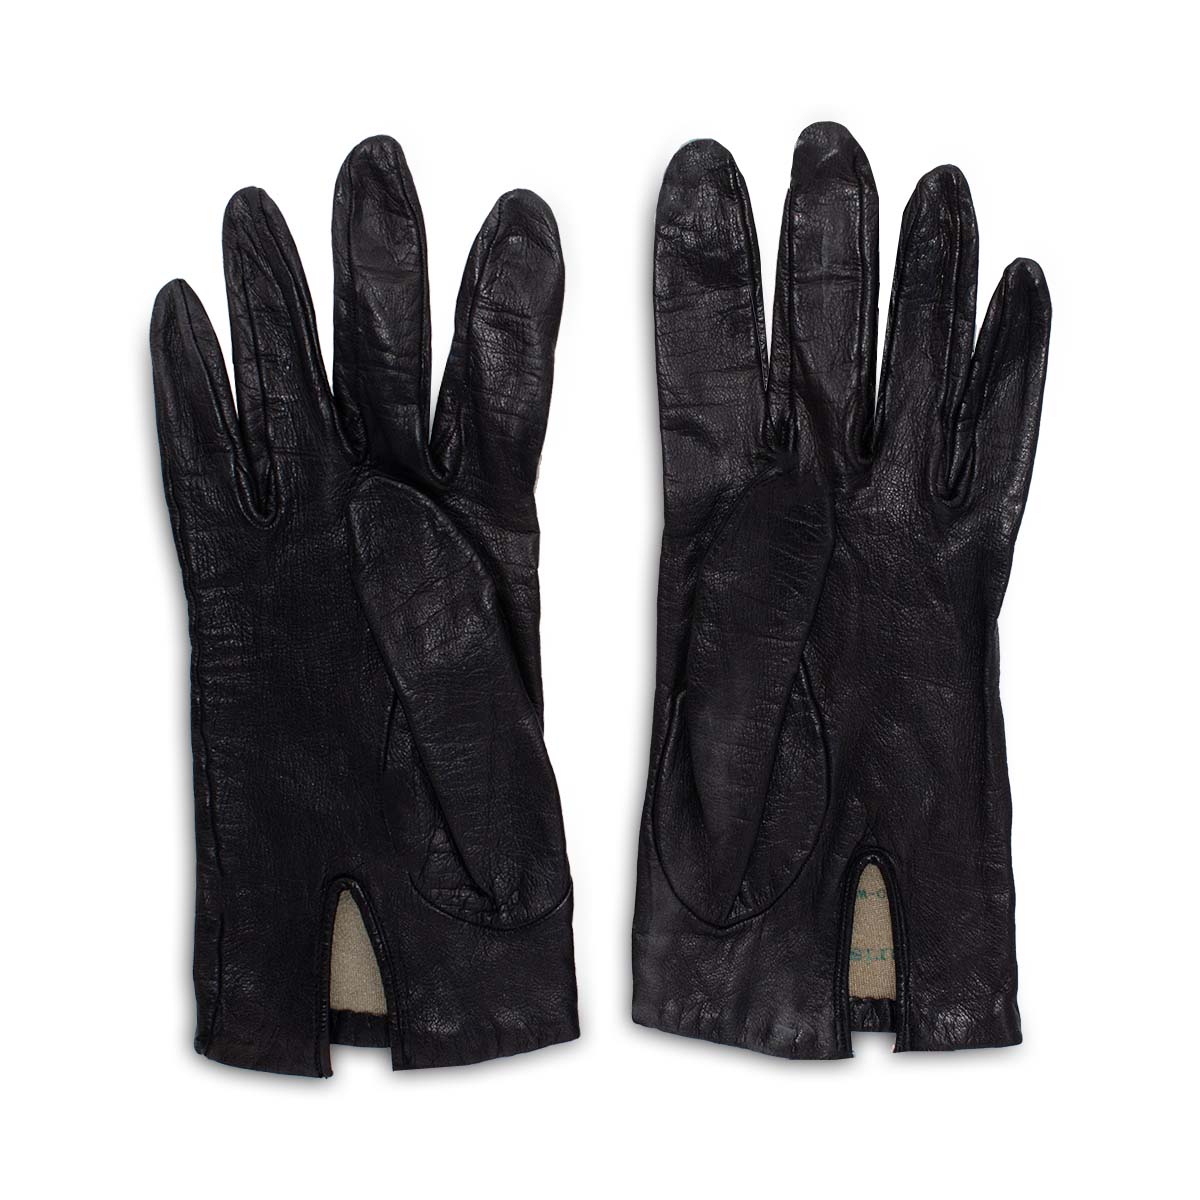 VIntage Christian Dior gloves